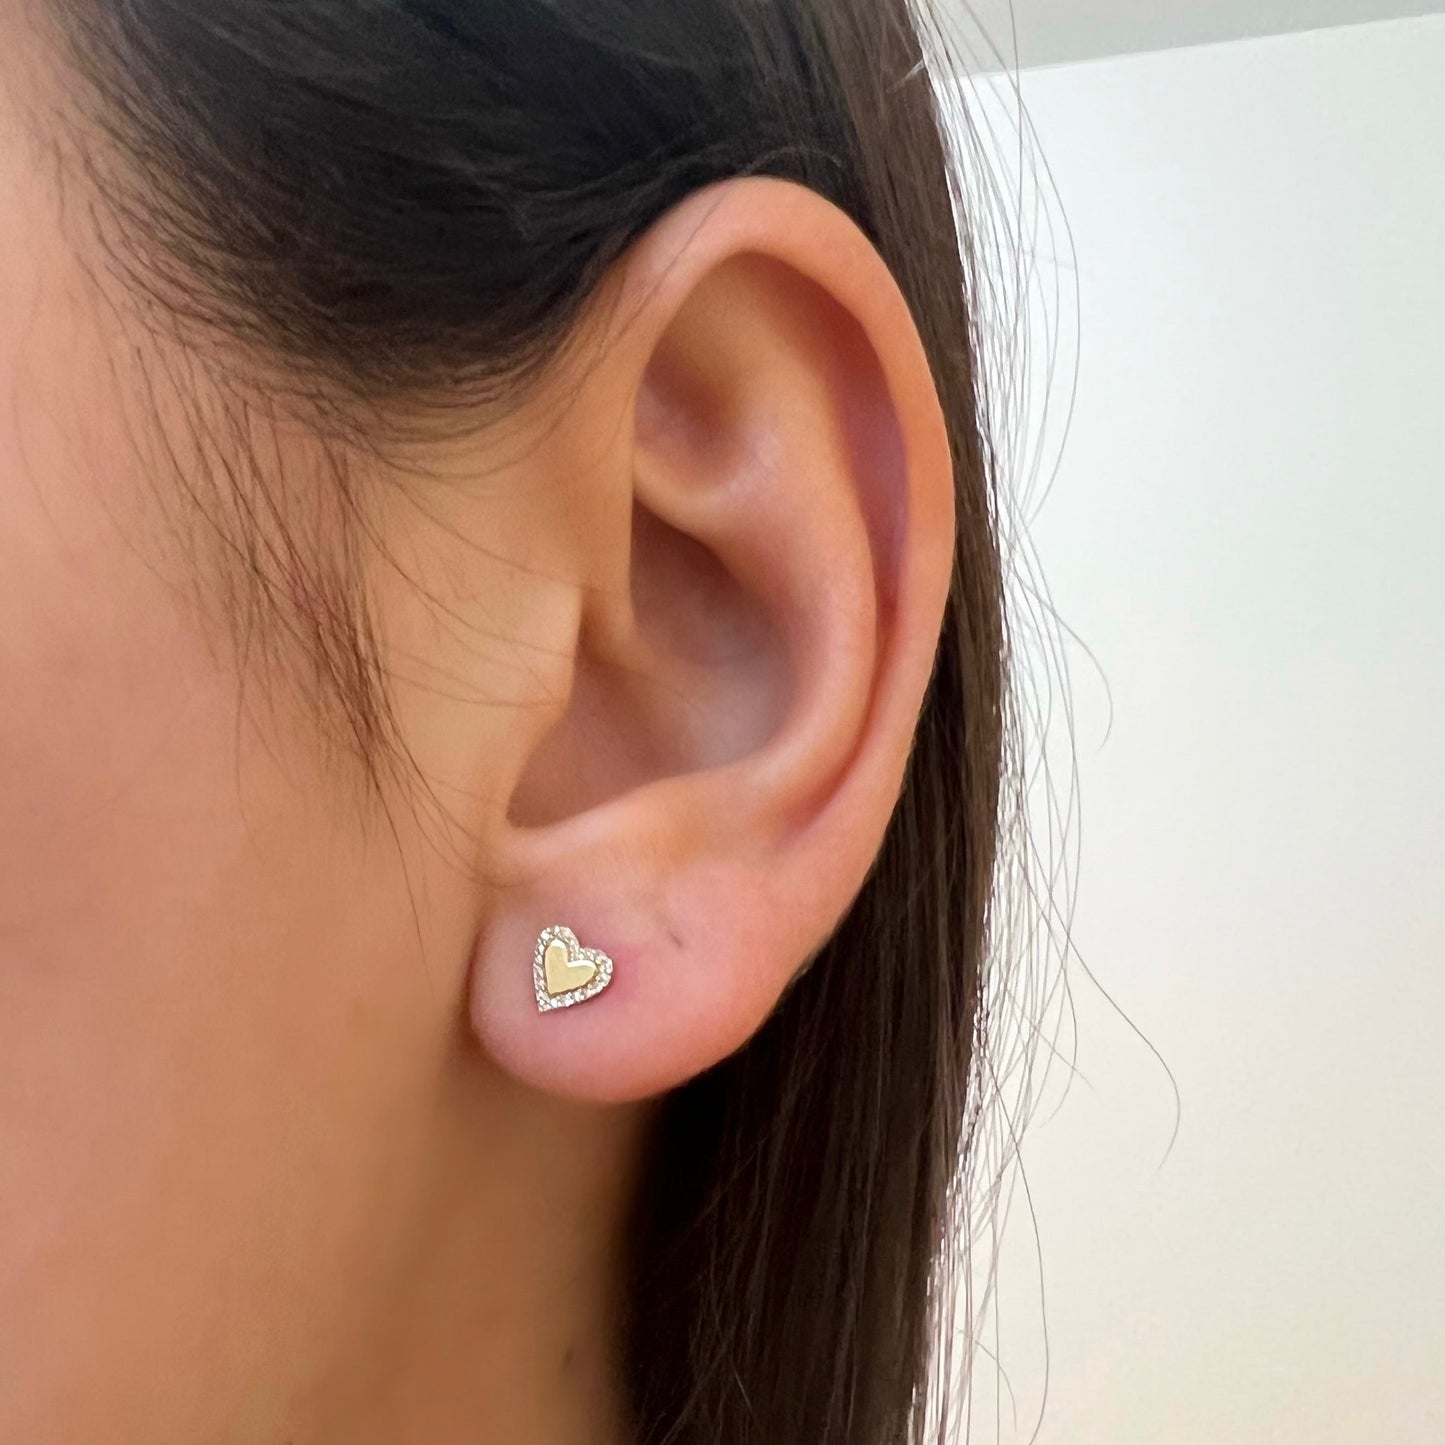 SAM heart earrings